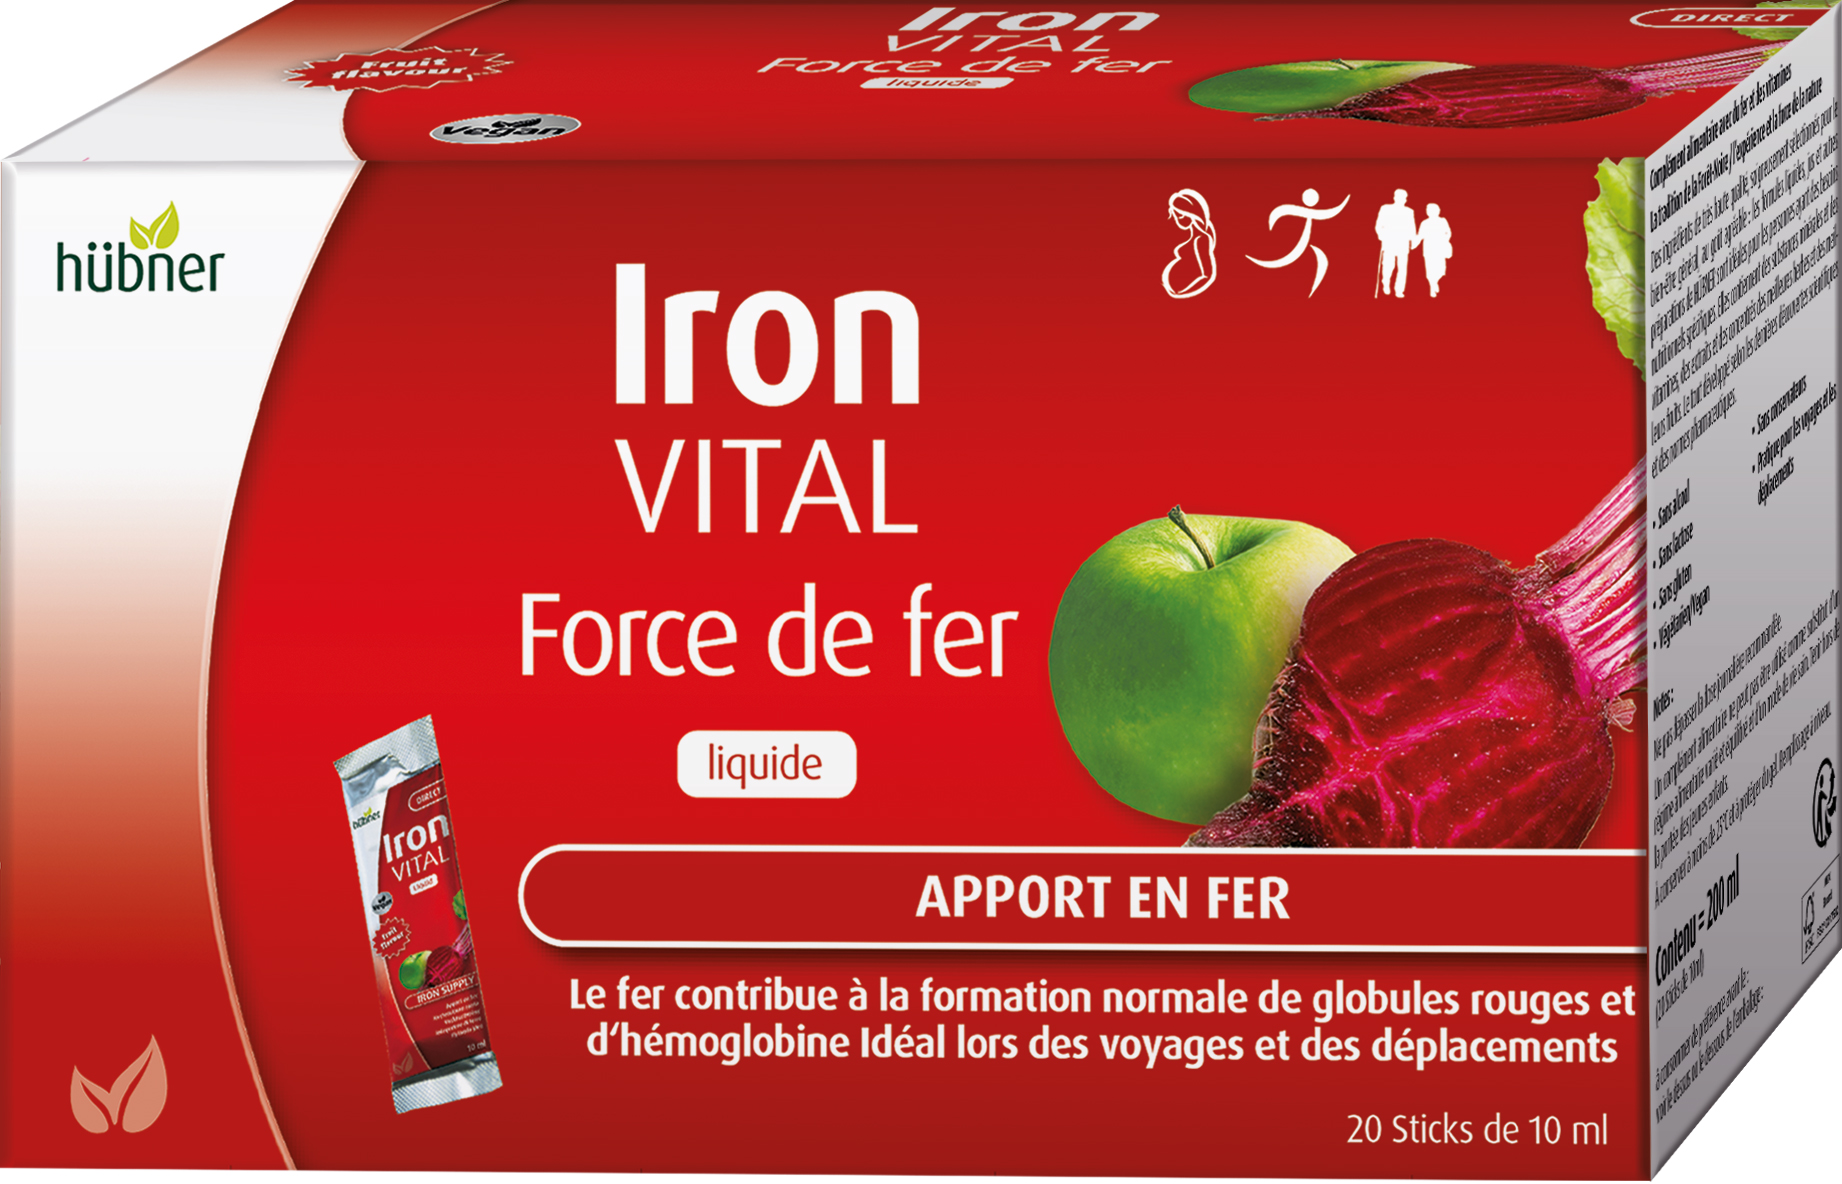 Hübner Iron VITAL (sachet) - Iron Vital - Force de fer Liquide (sachet)